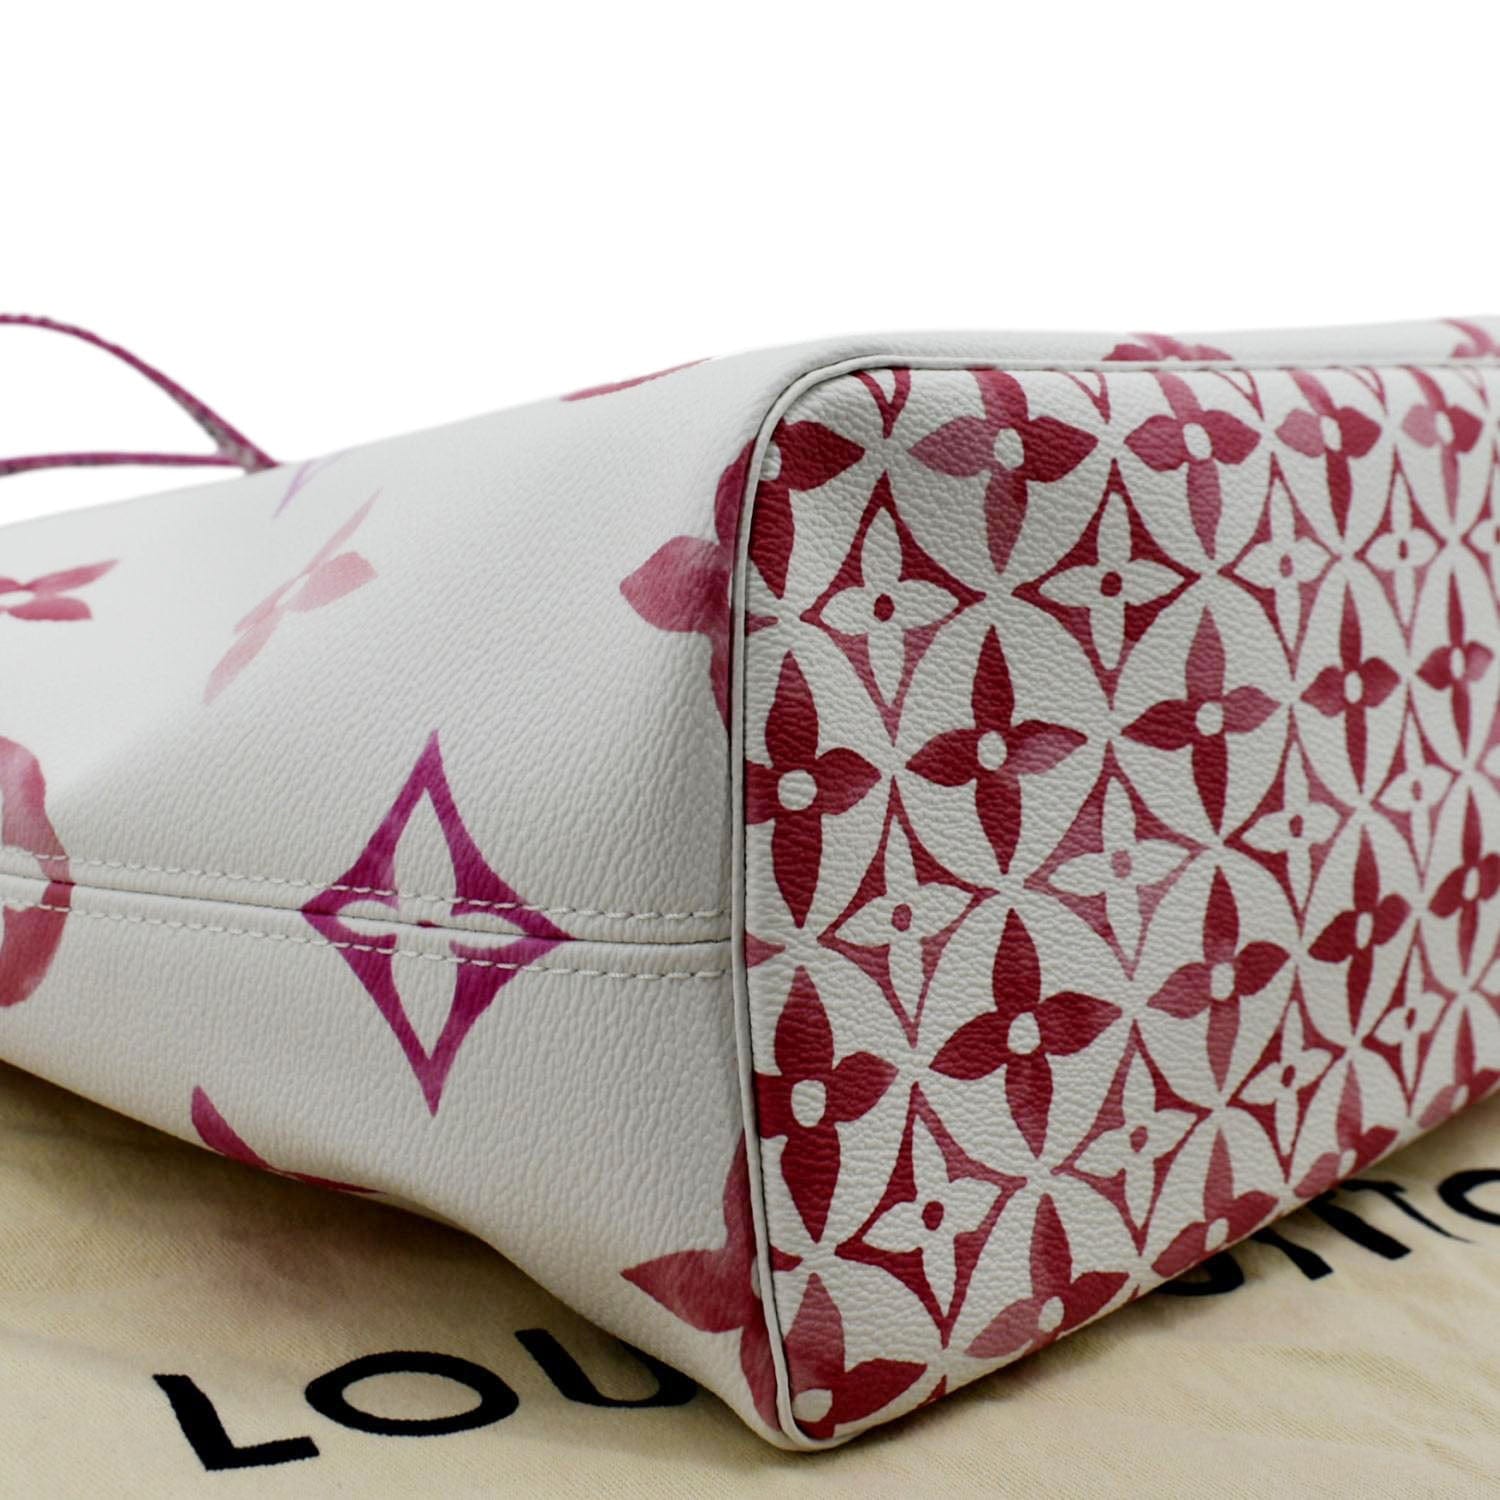 Louis Vuitton, Bags, Louis Vuitton Neverfull Mm Monogram Shoulder Bag